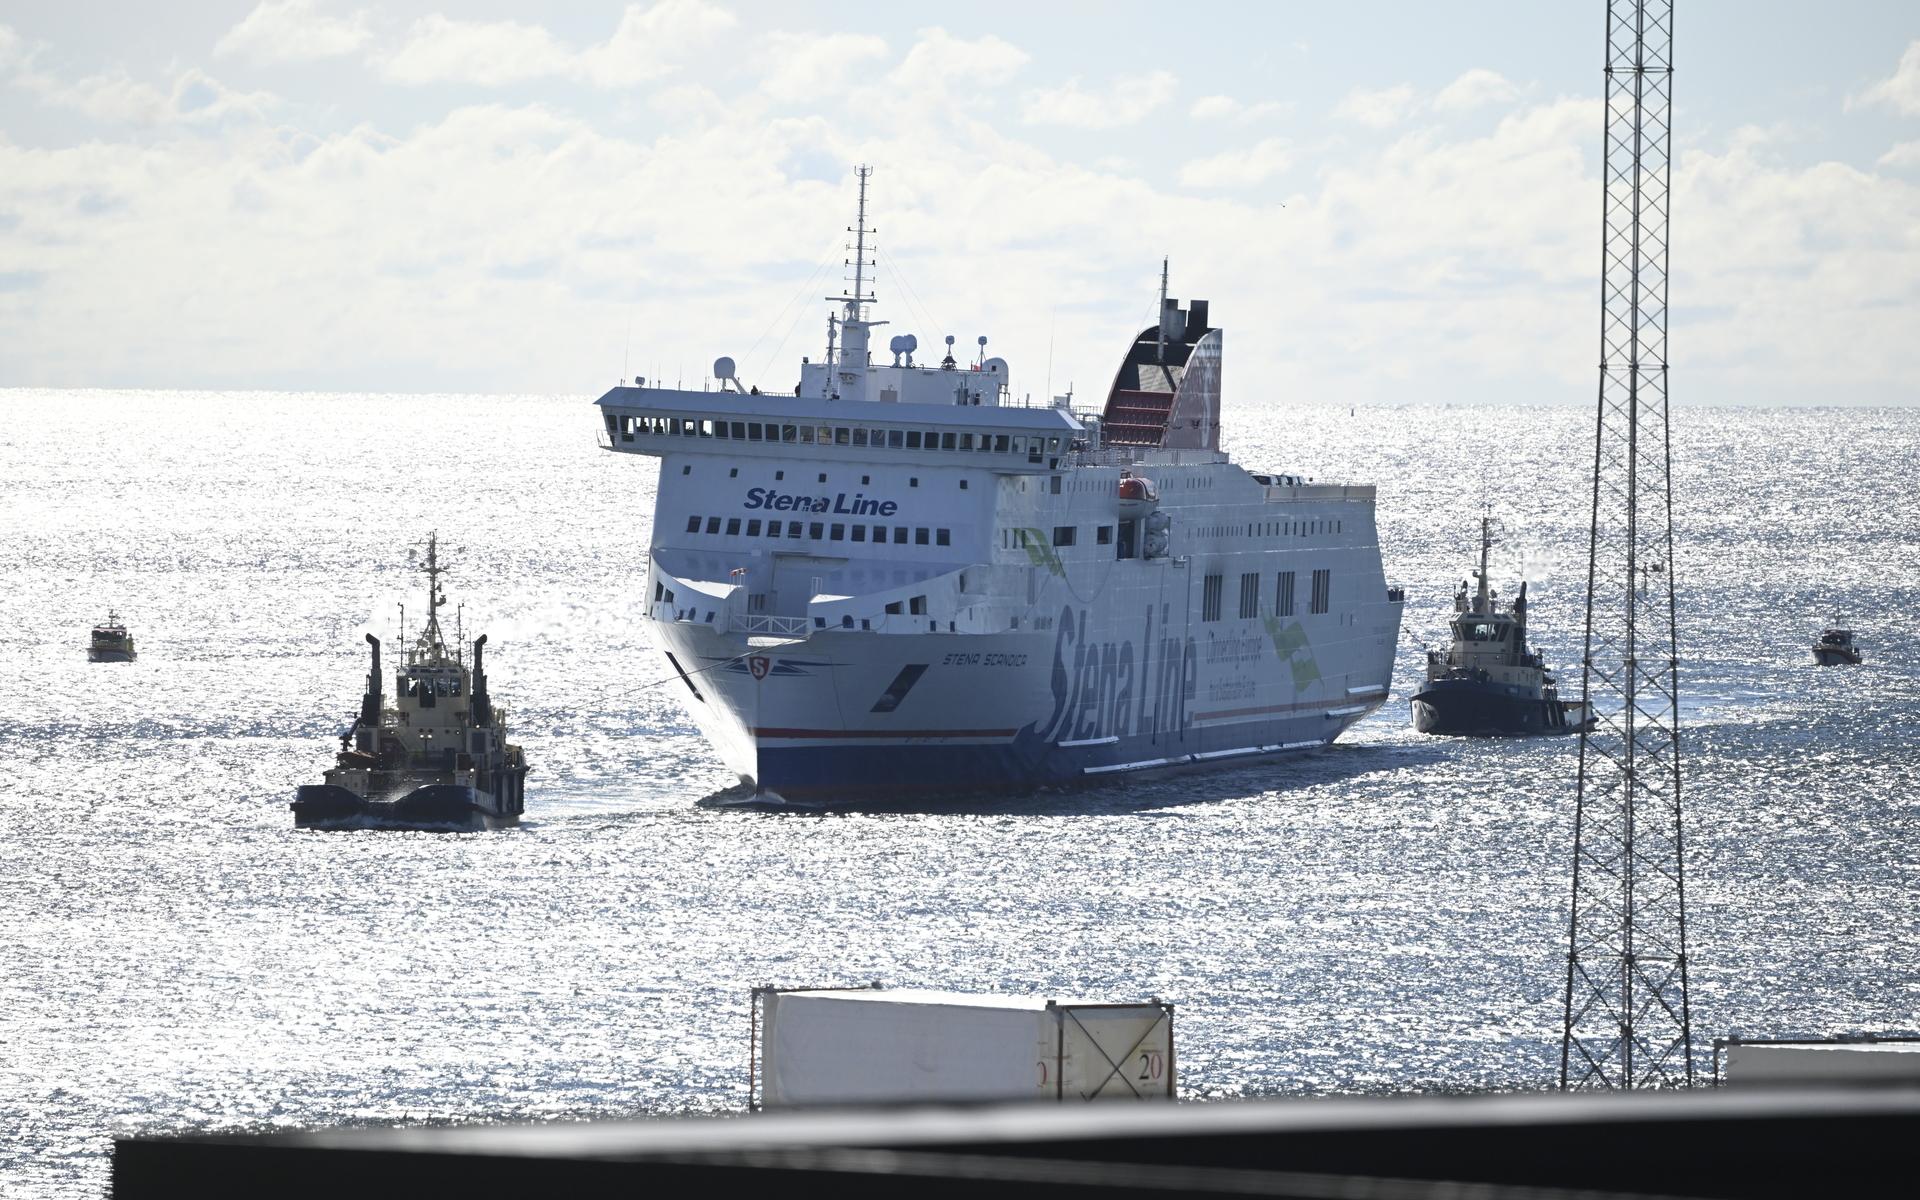 Vid 11-tiden på tisdagen anlände Stena Scandica i hamnen i Nynäshamn. 